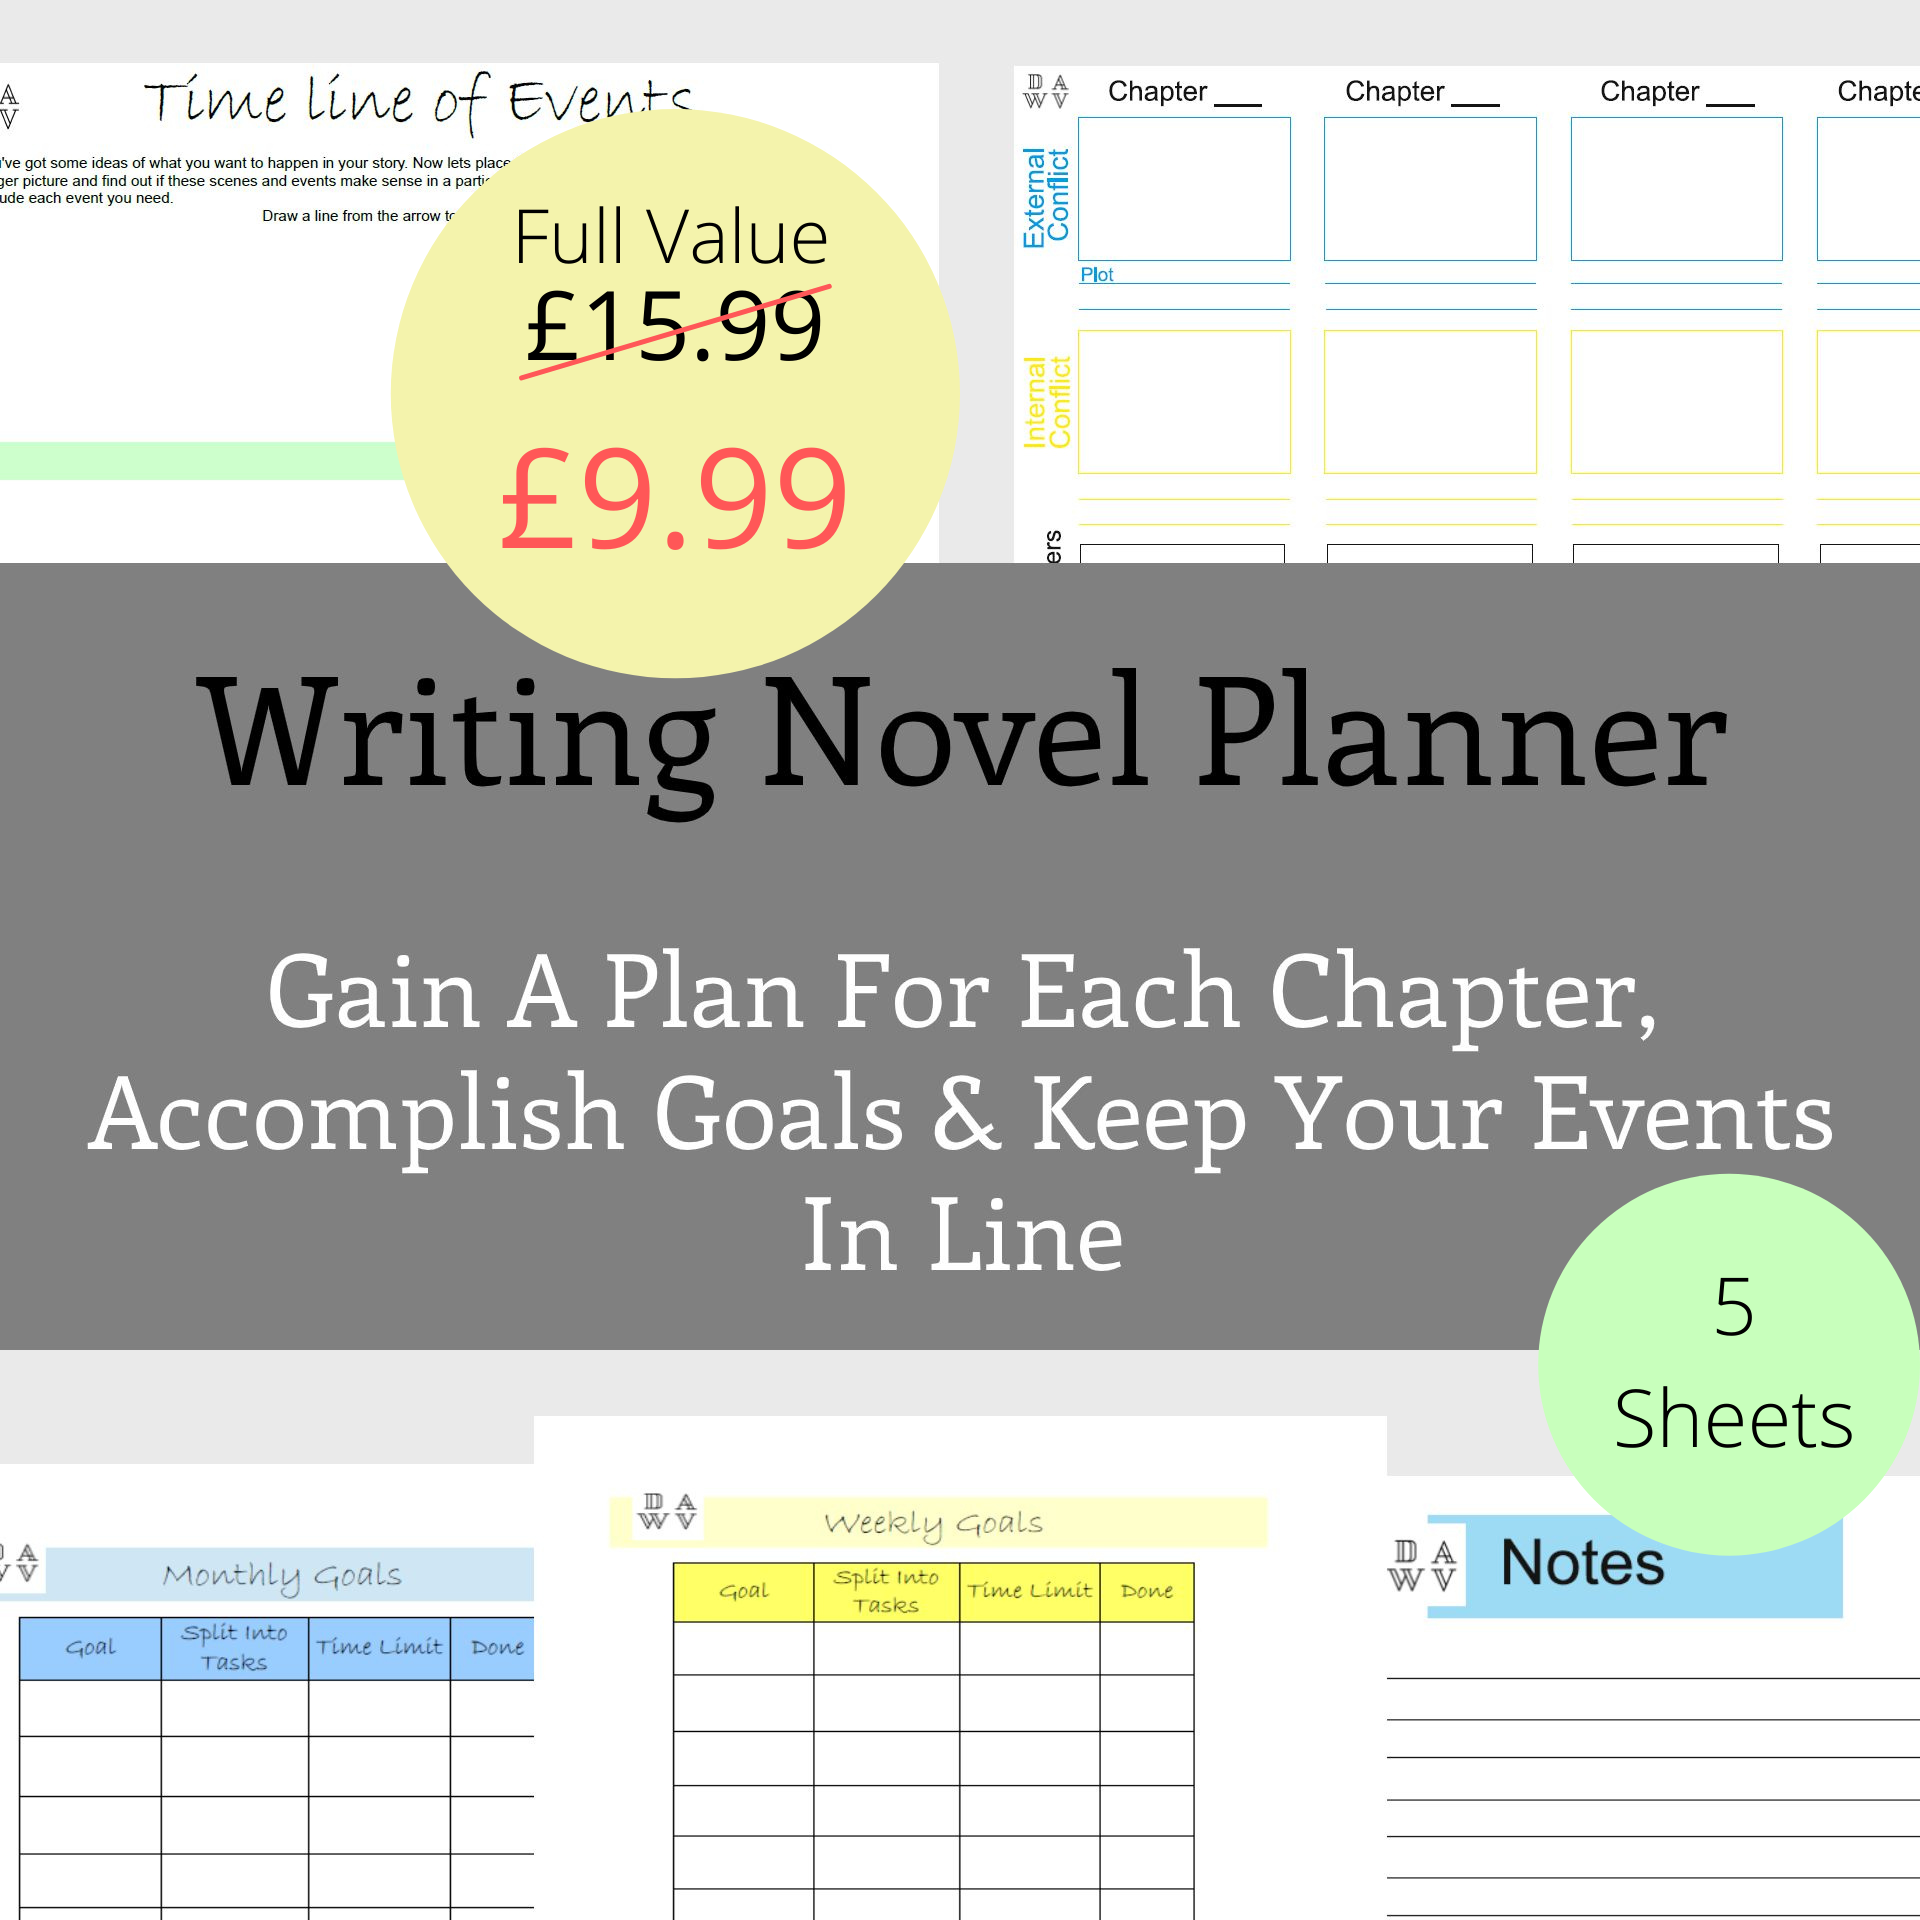 Writing Novel Planner